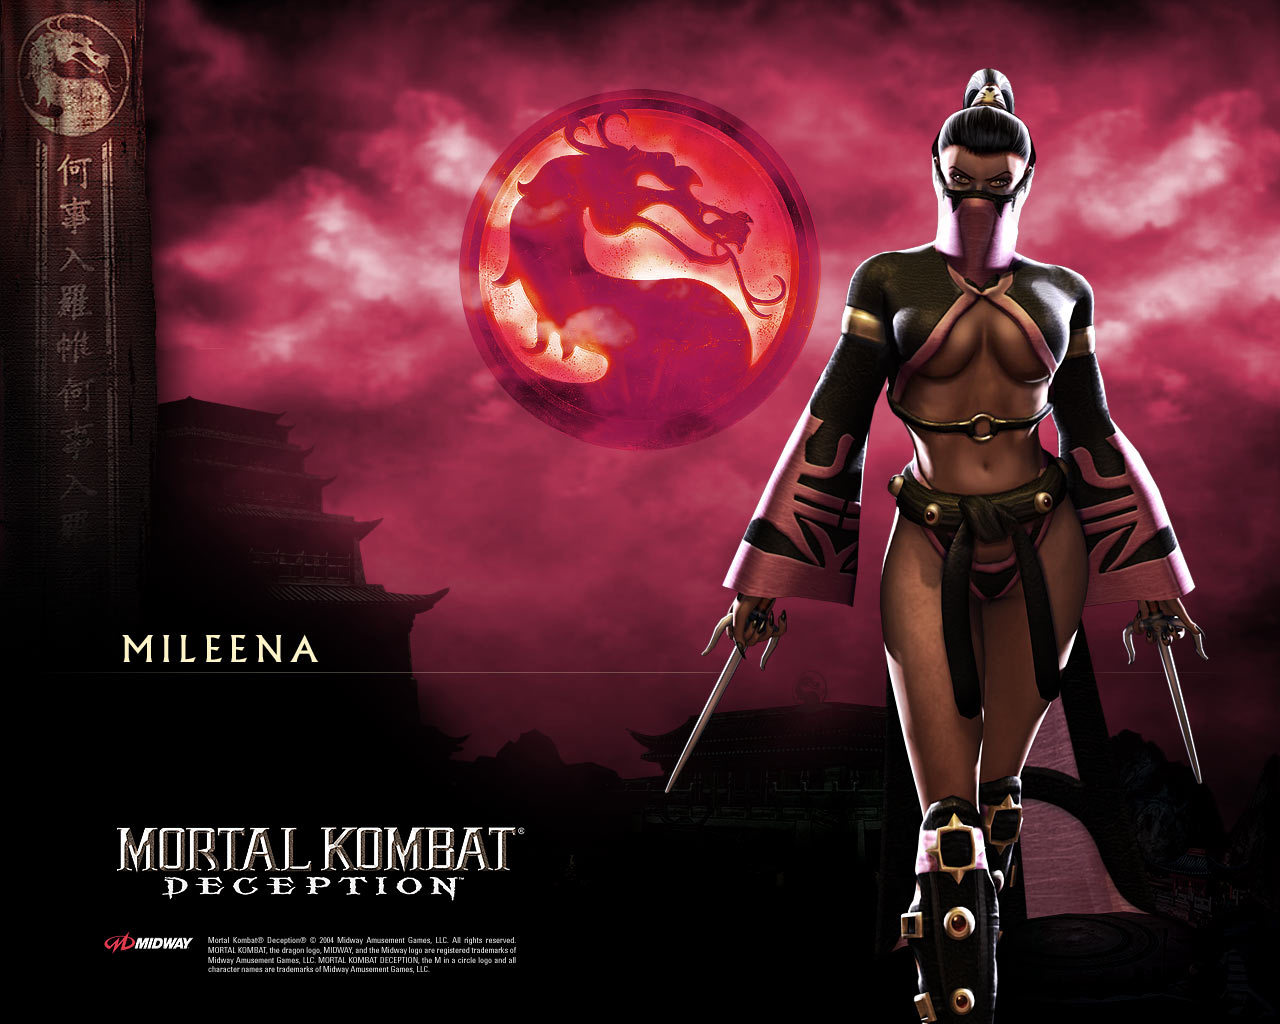 Скачать картинку Мортал Комбат (Mortal Kombat), Игры в телефон бесплатно.